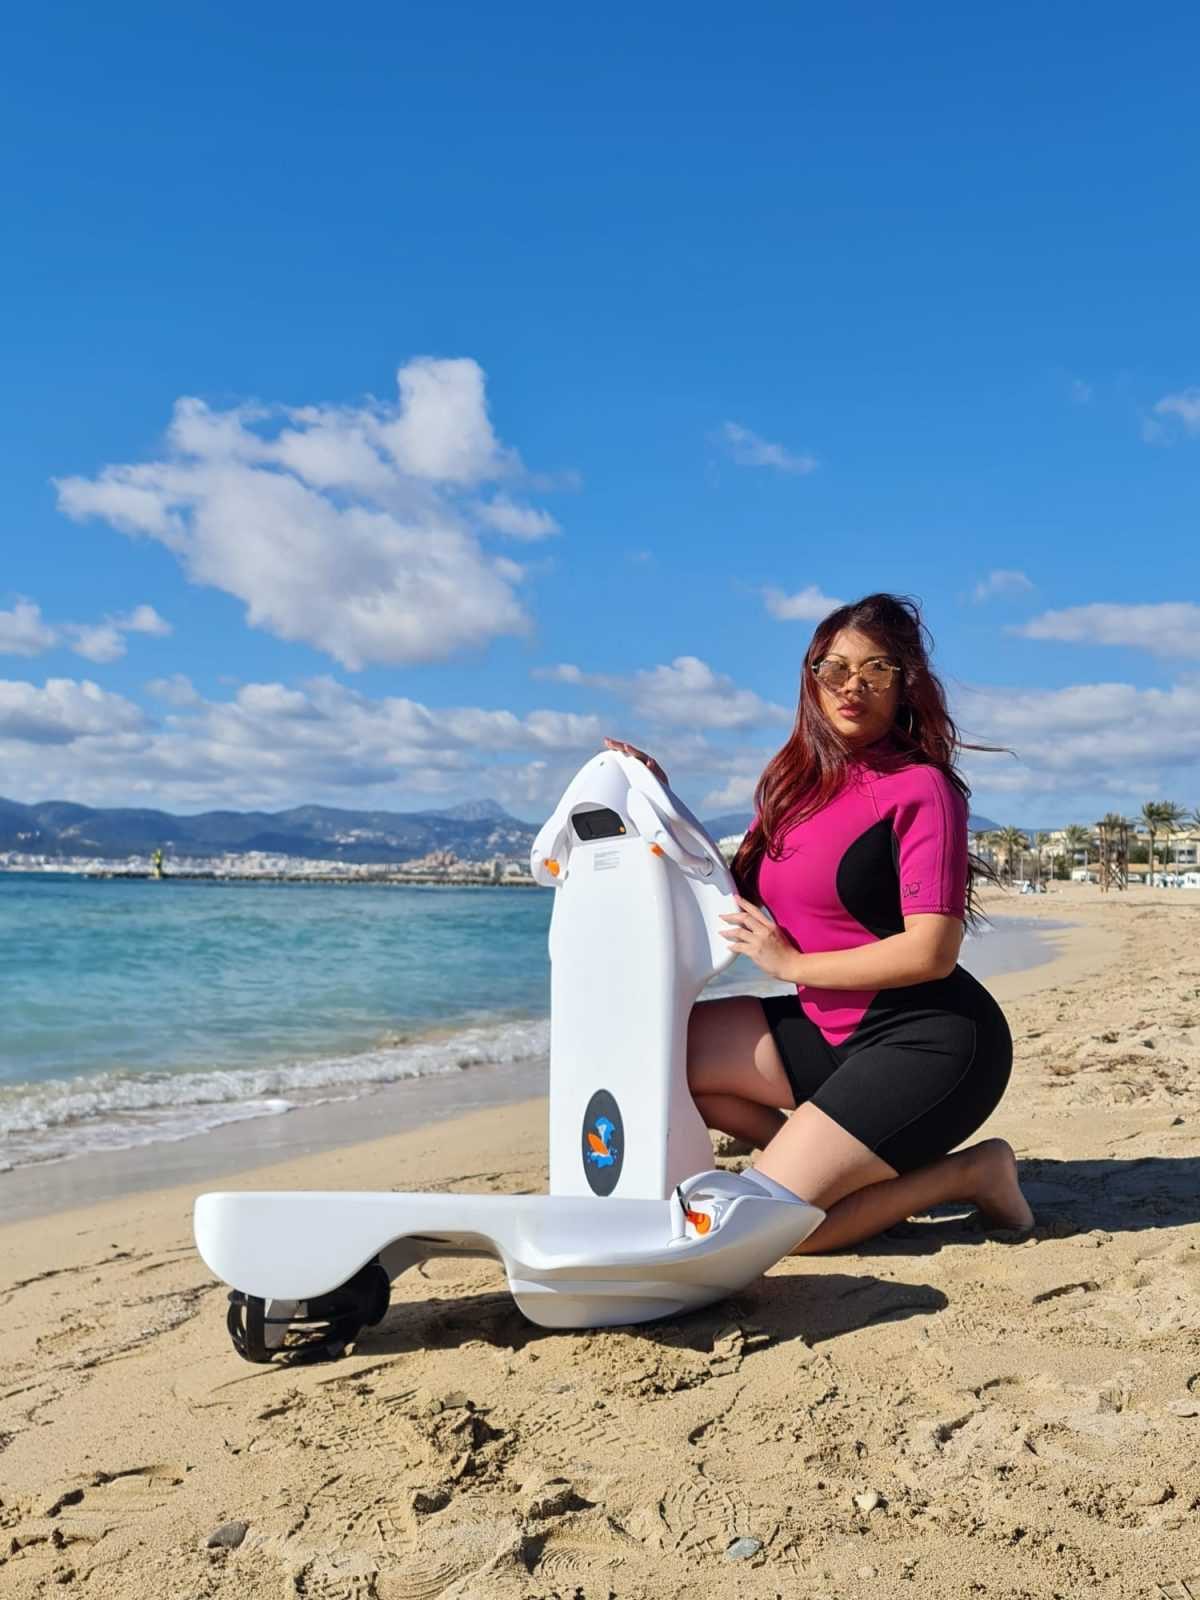 Modelo en la playa con scooter que se puede alquilar en manolo yachts.